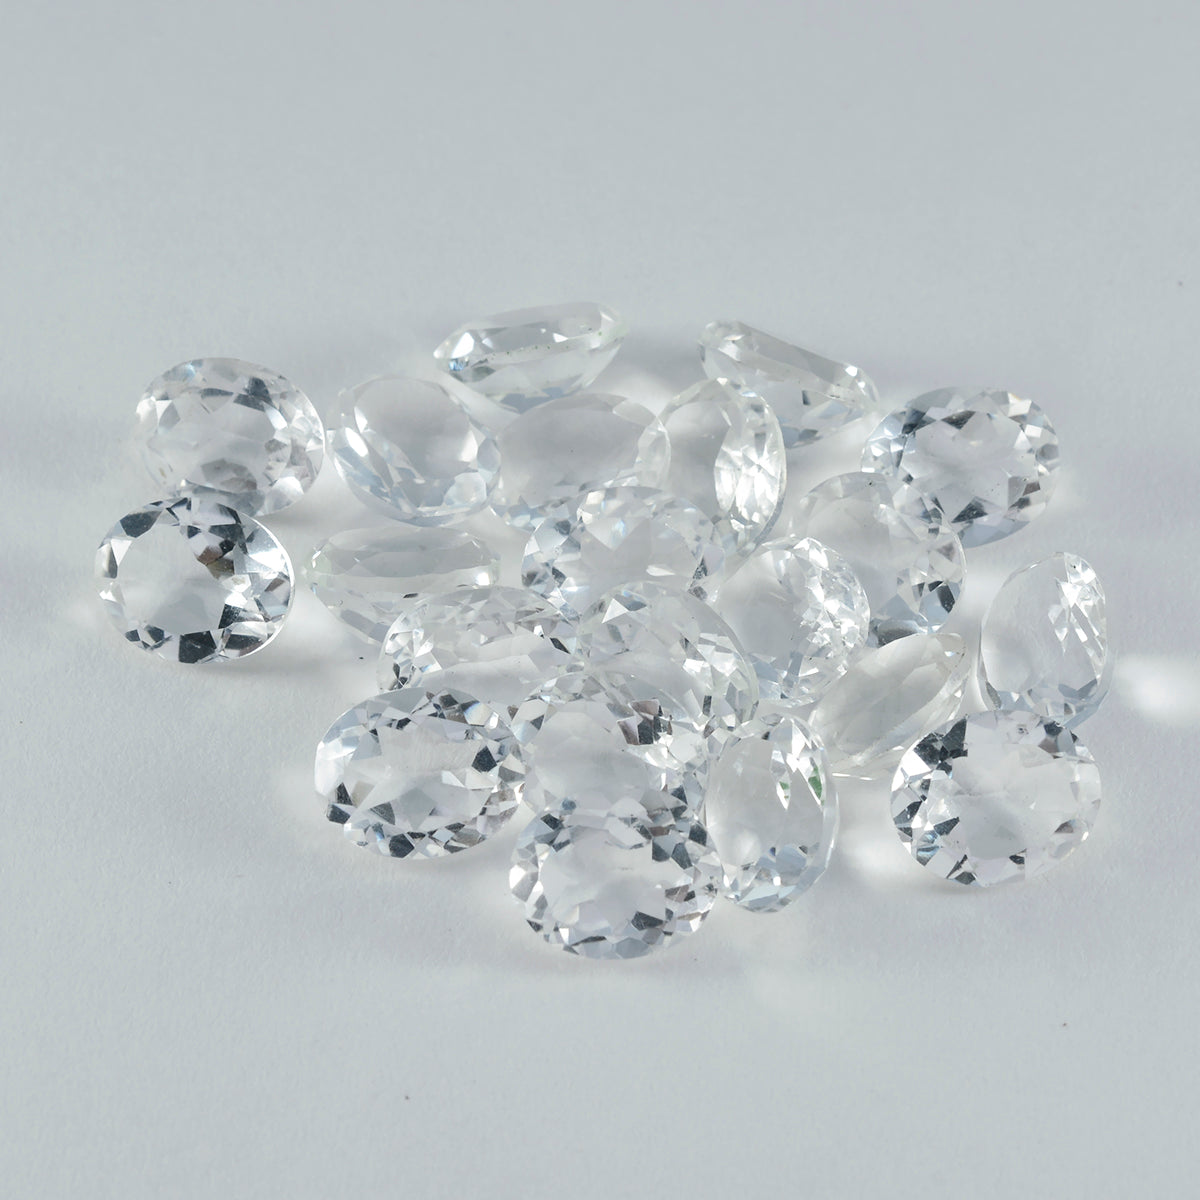 riyogems 1шт белый кристалл кварца ограненный 5x7 мм овальной формы красивый качественный драгоценный камень